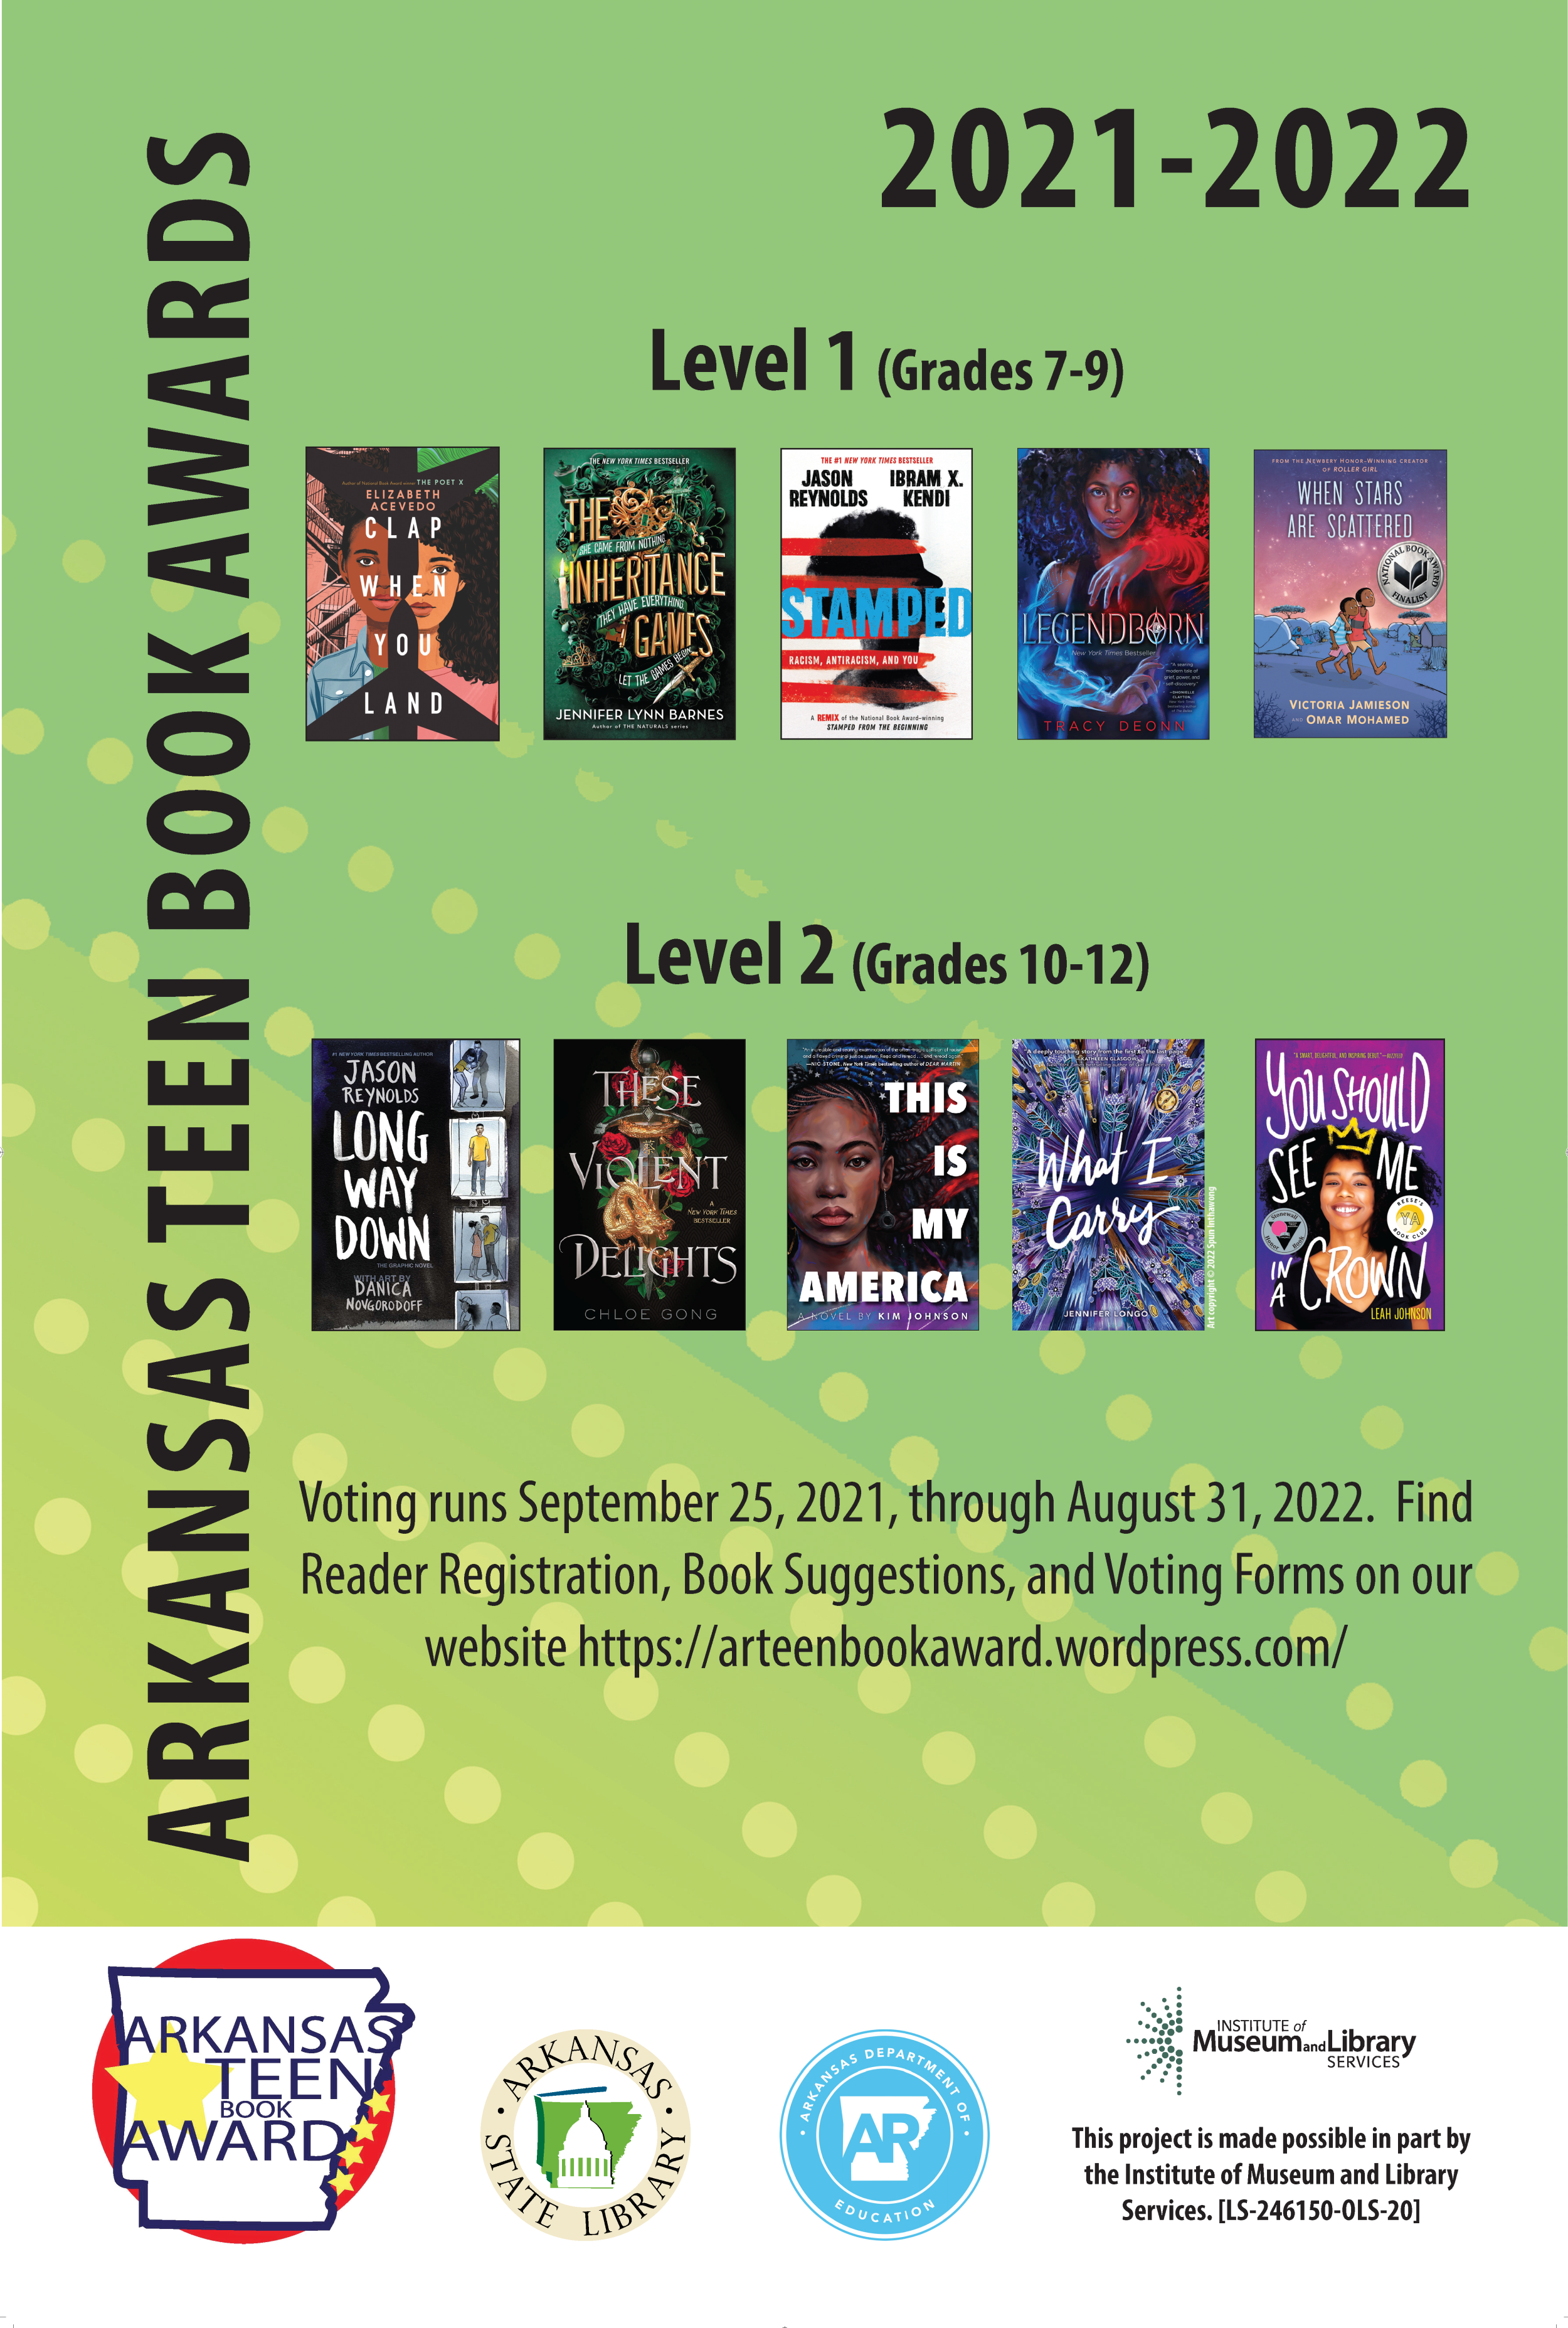 Arkansas Teen Book Award 2021-2022 Poster